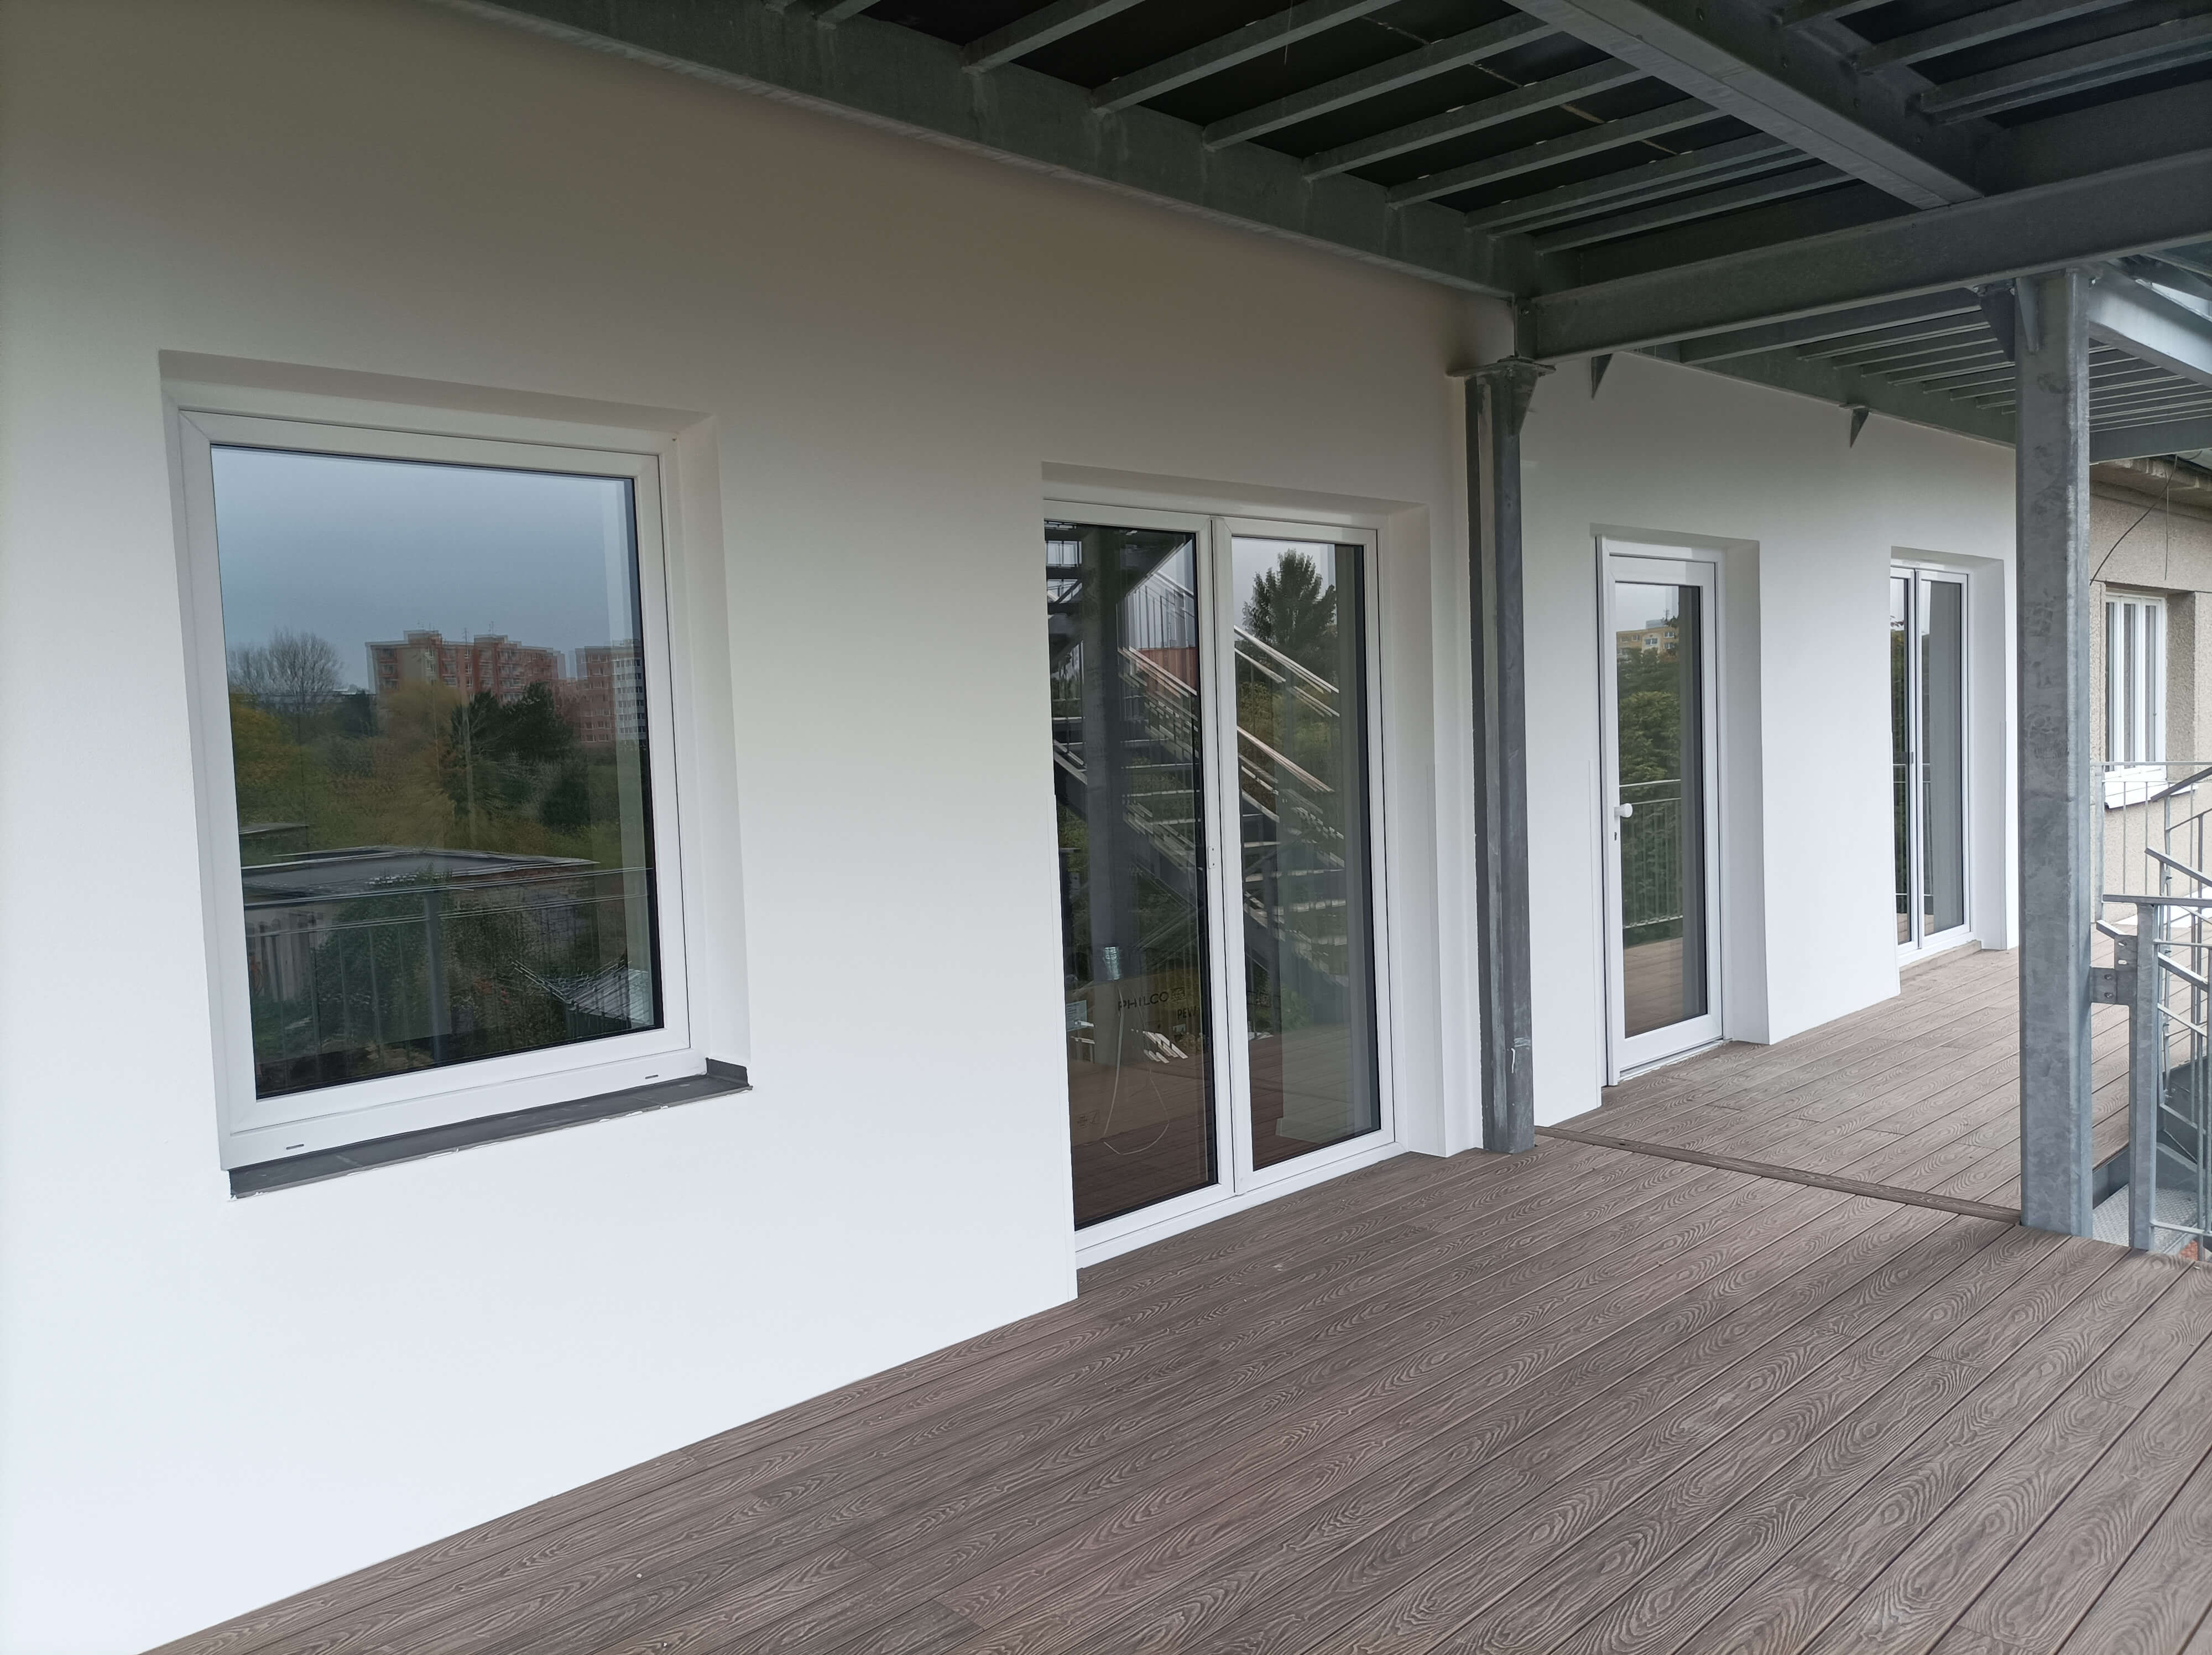 Pronájem zařízené novostavby 3kk, 68 m2, s terasou, 20m2, v patře RD v Olomouci, ul. Jablonského